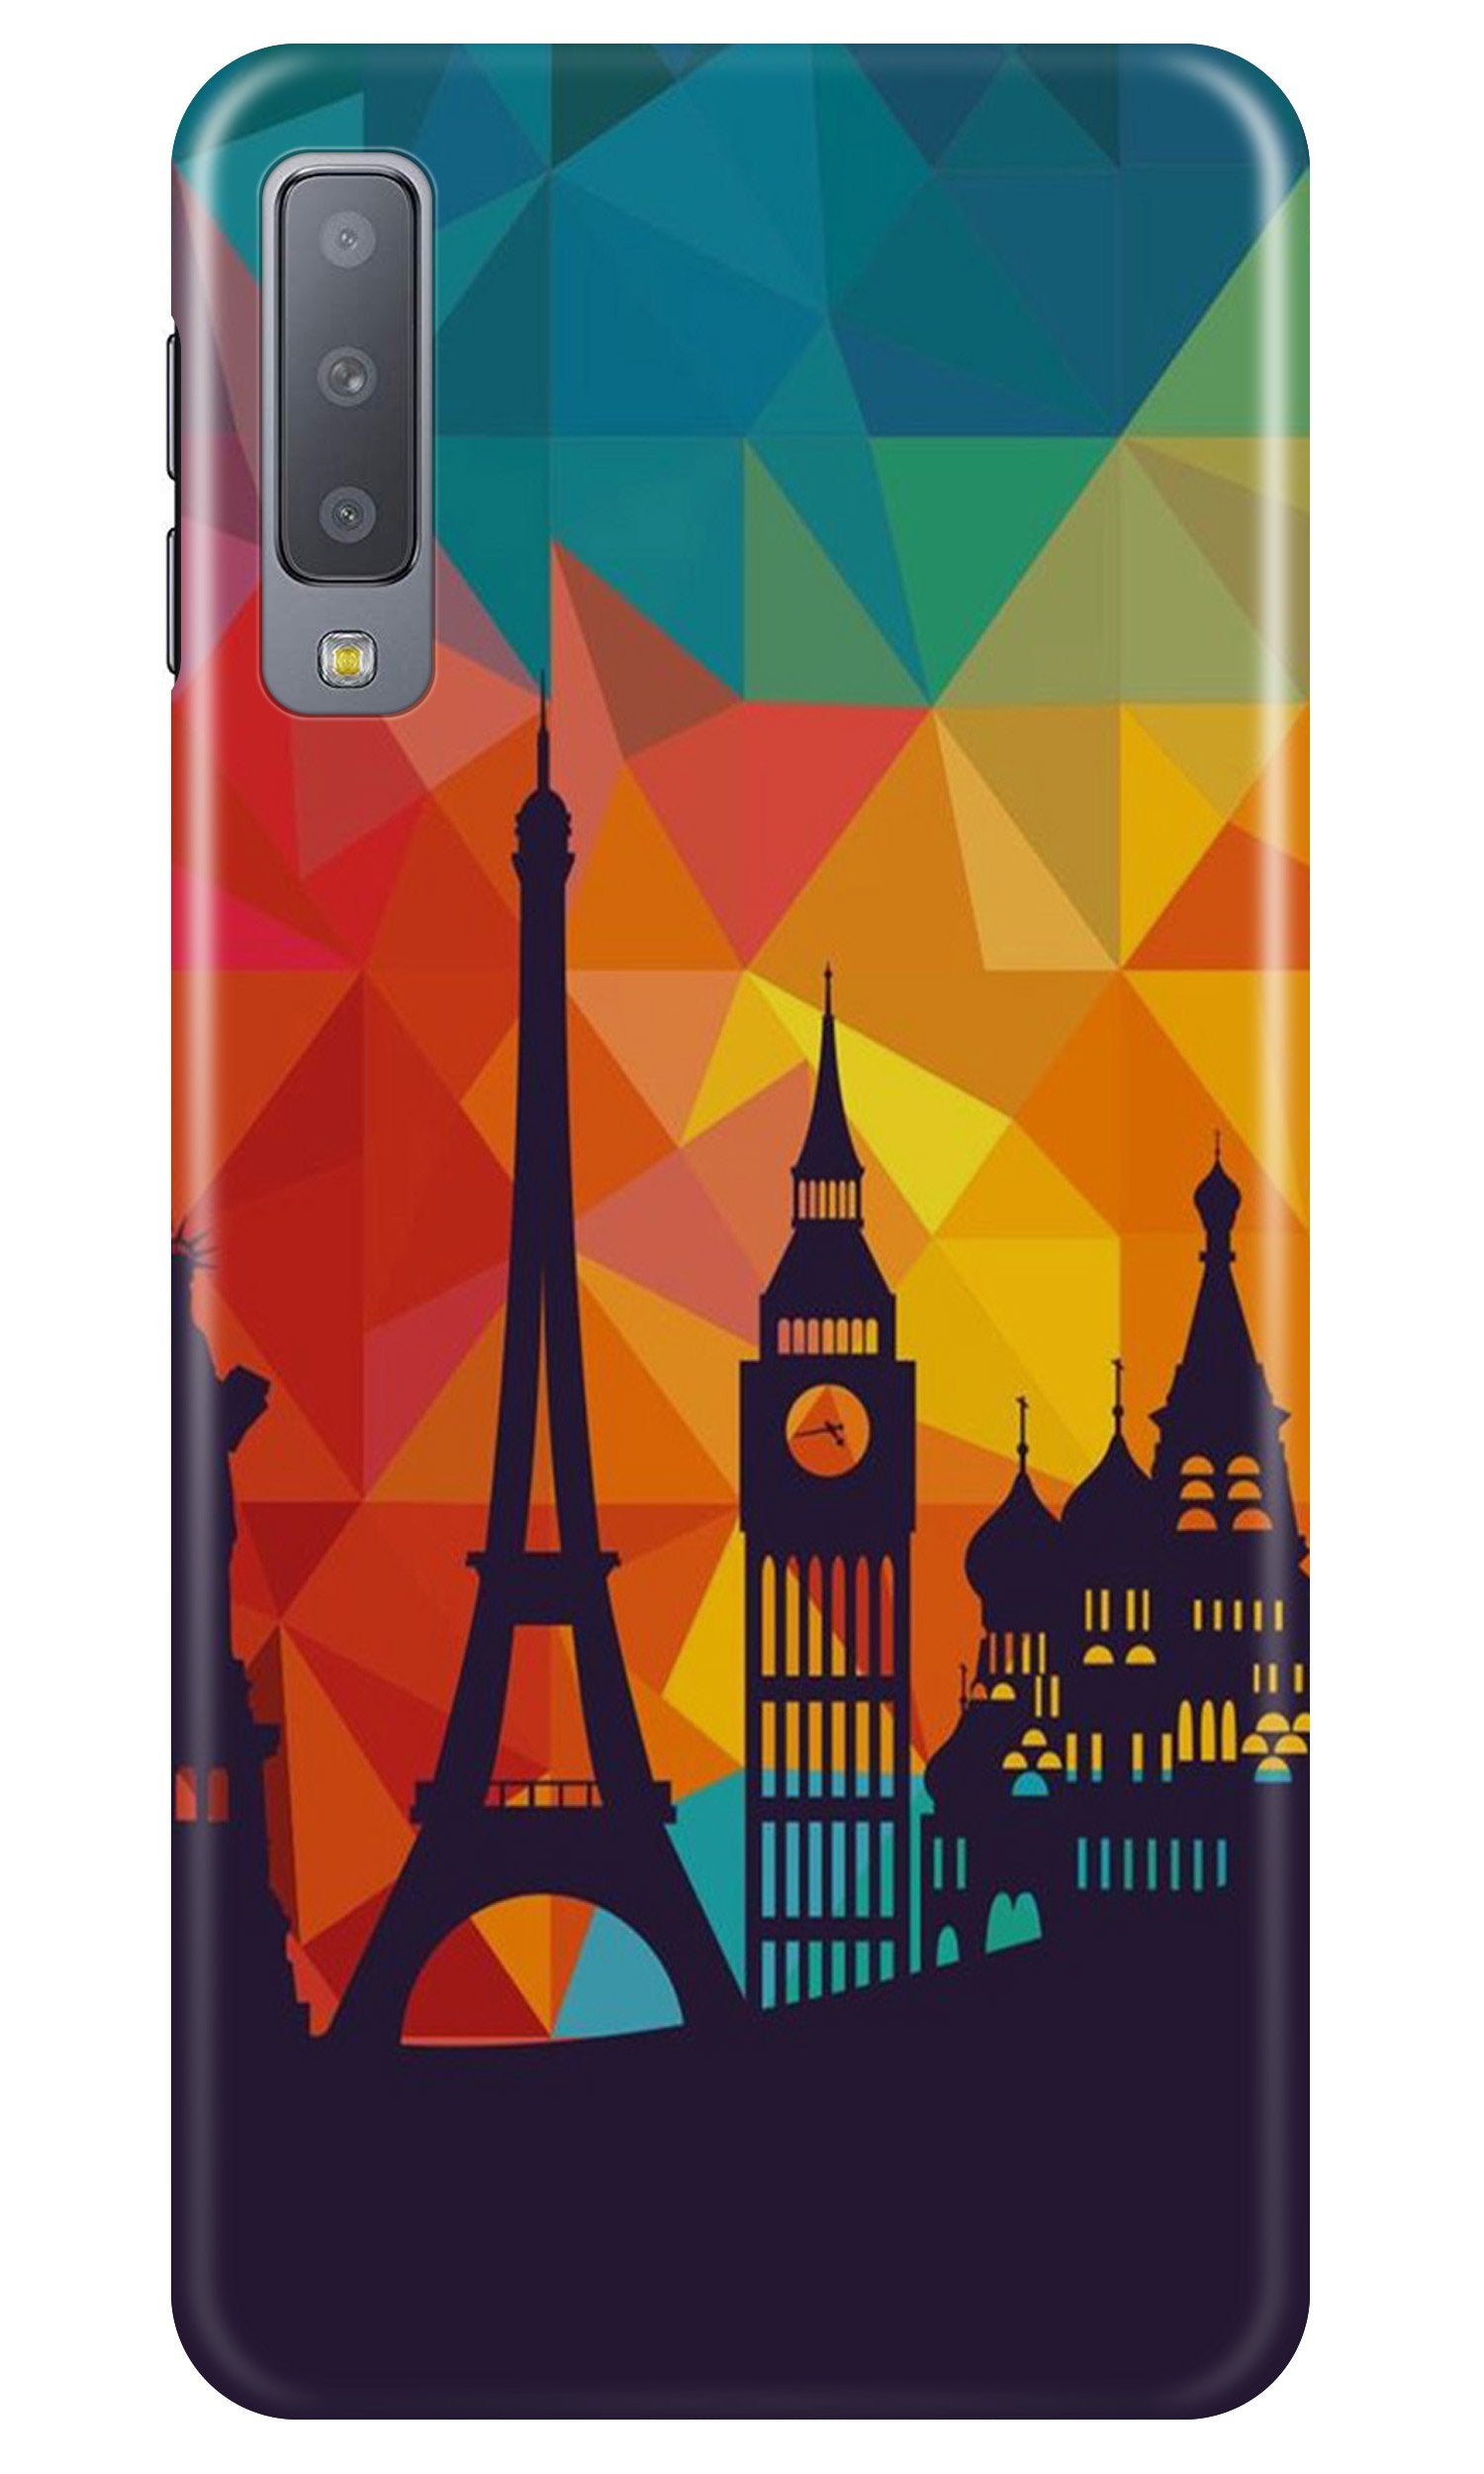 Eiffel Tower2 Case for Samsung Galaxy A30s